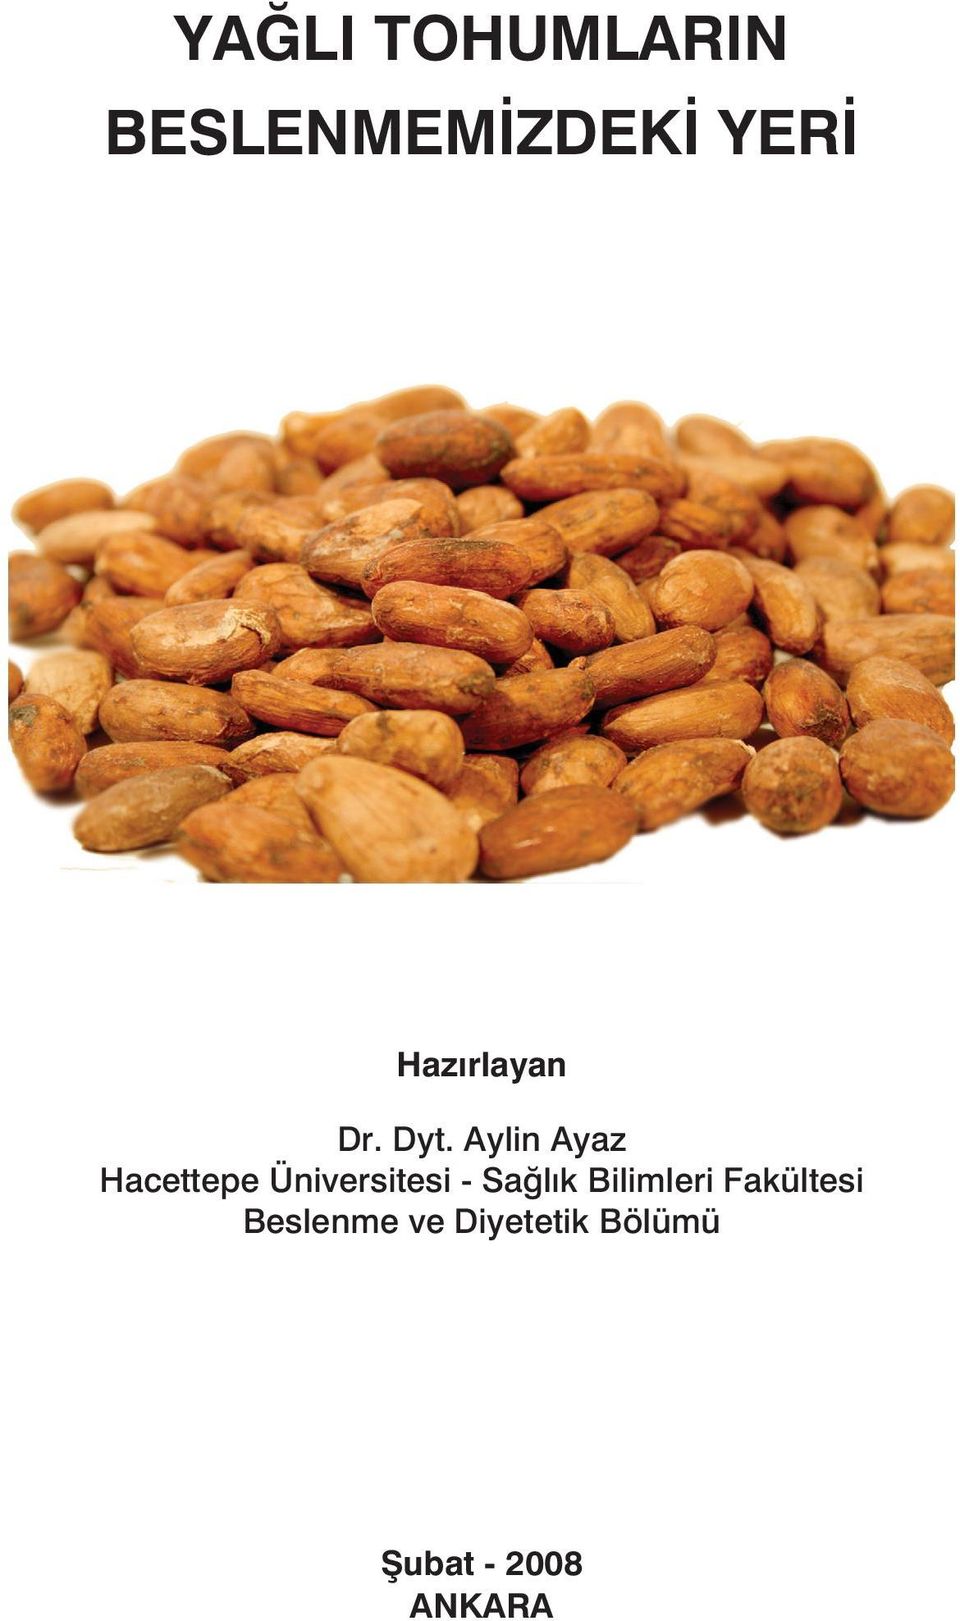 Aylin Ayaz Hacettepe Üniversitesi - Sağlık